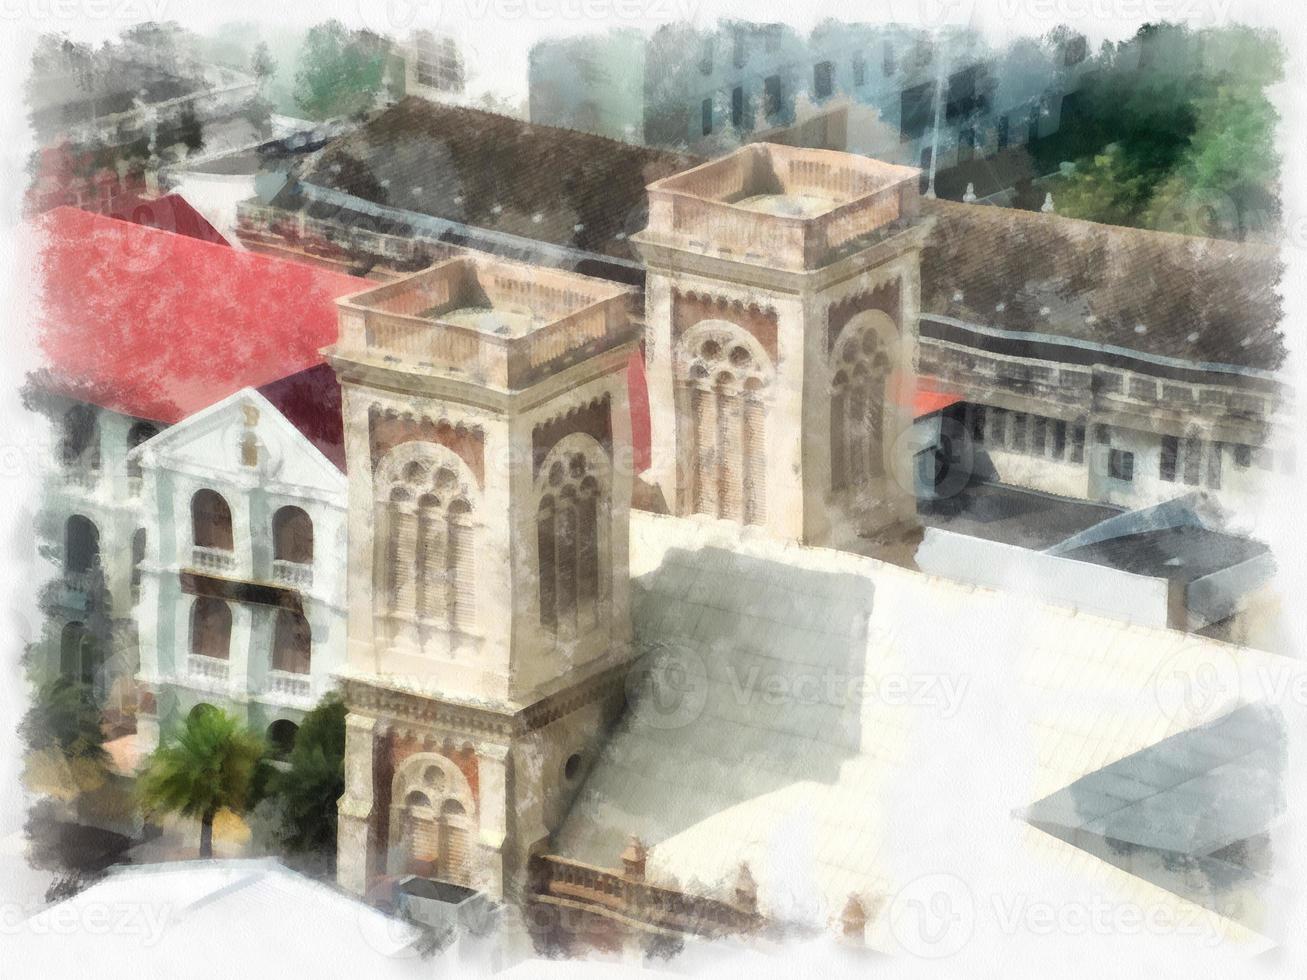 iglesia de estilo gótico en la ciudad desde arriba pintura impresionista de ilustración de estilo acuarela. foto